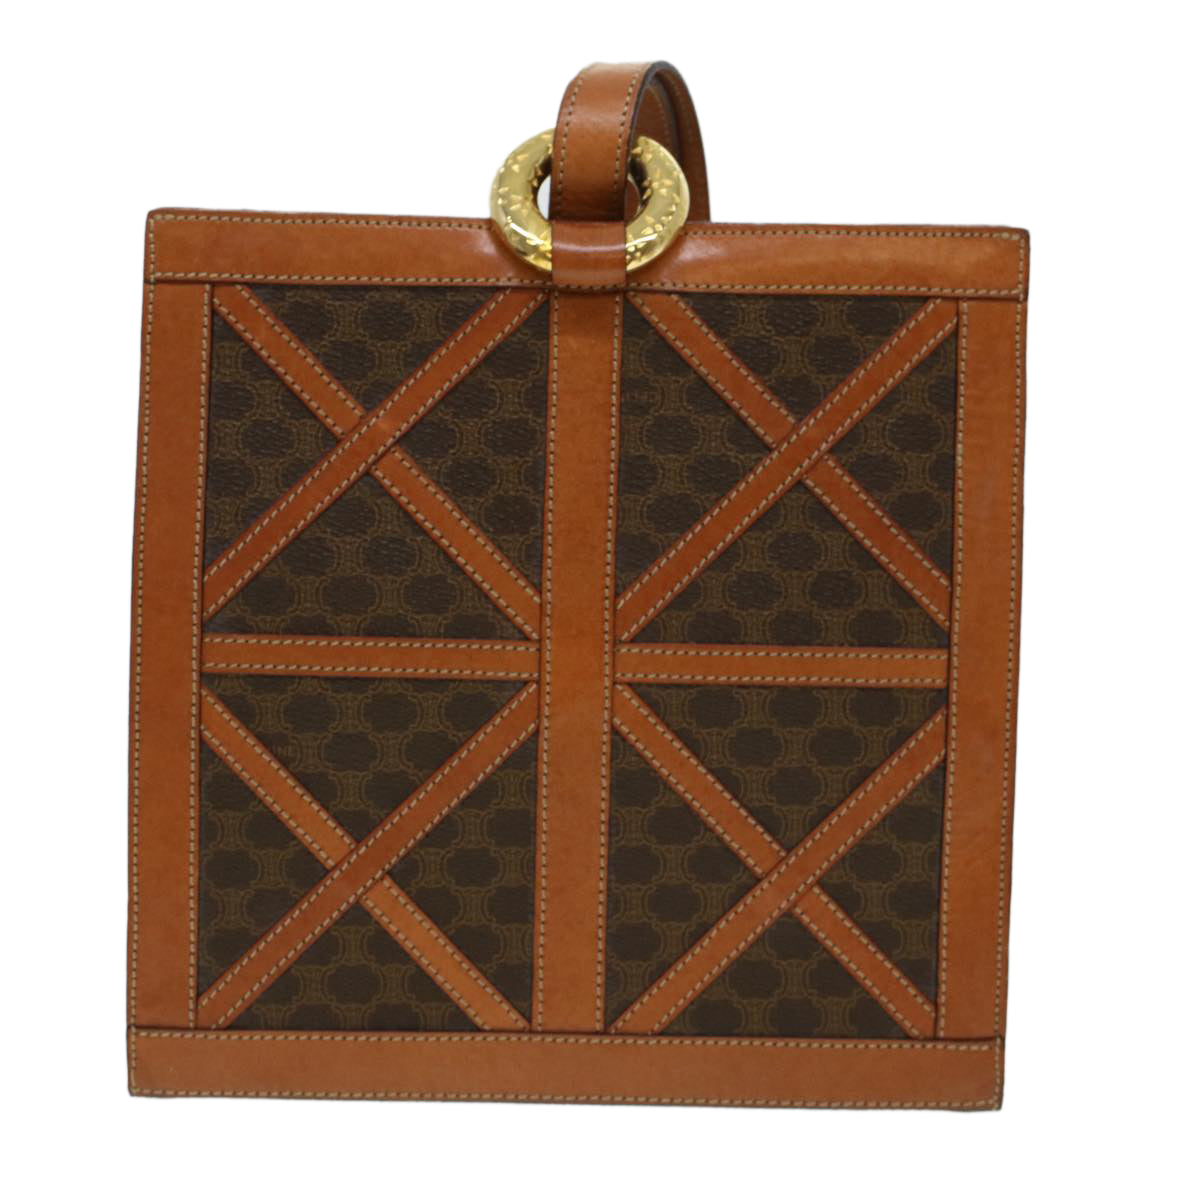 CELINE Macadam Canvas Shoulder Bag PVC Leather Brown Auth 43112 - 0